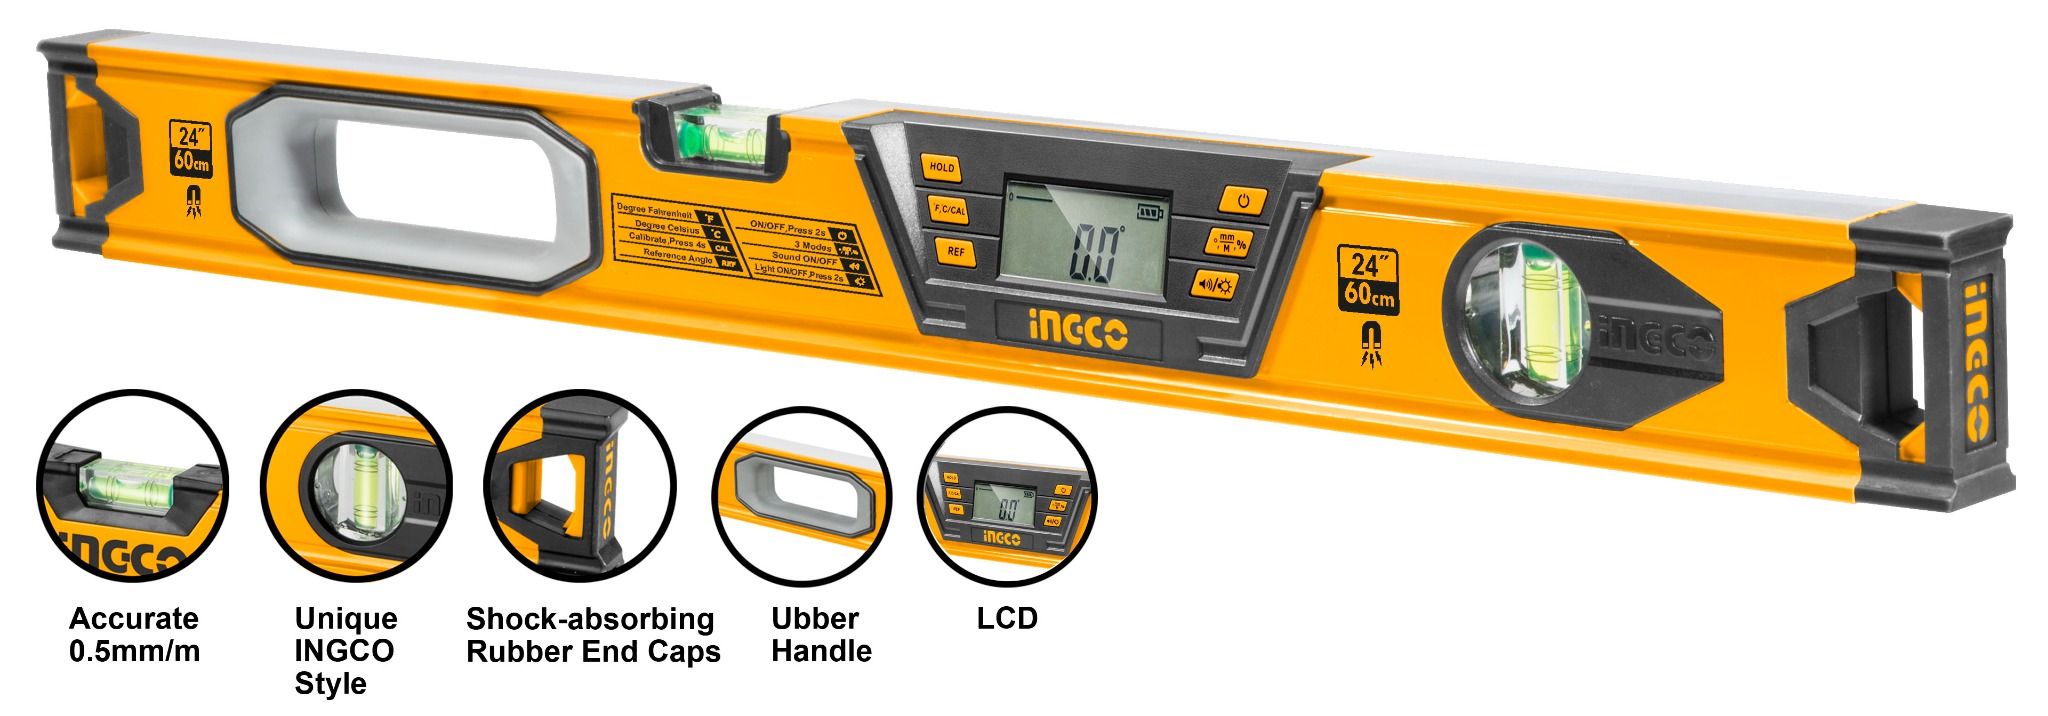 Thước đo kỹ thuật số HSL08060D INGCO